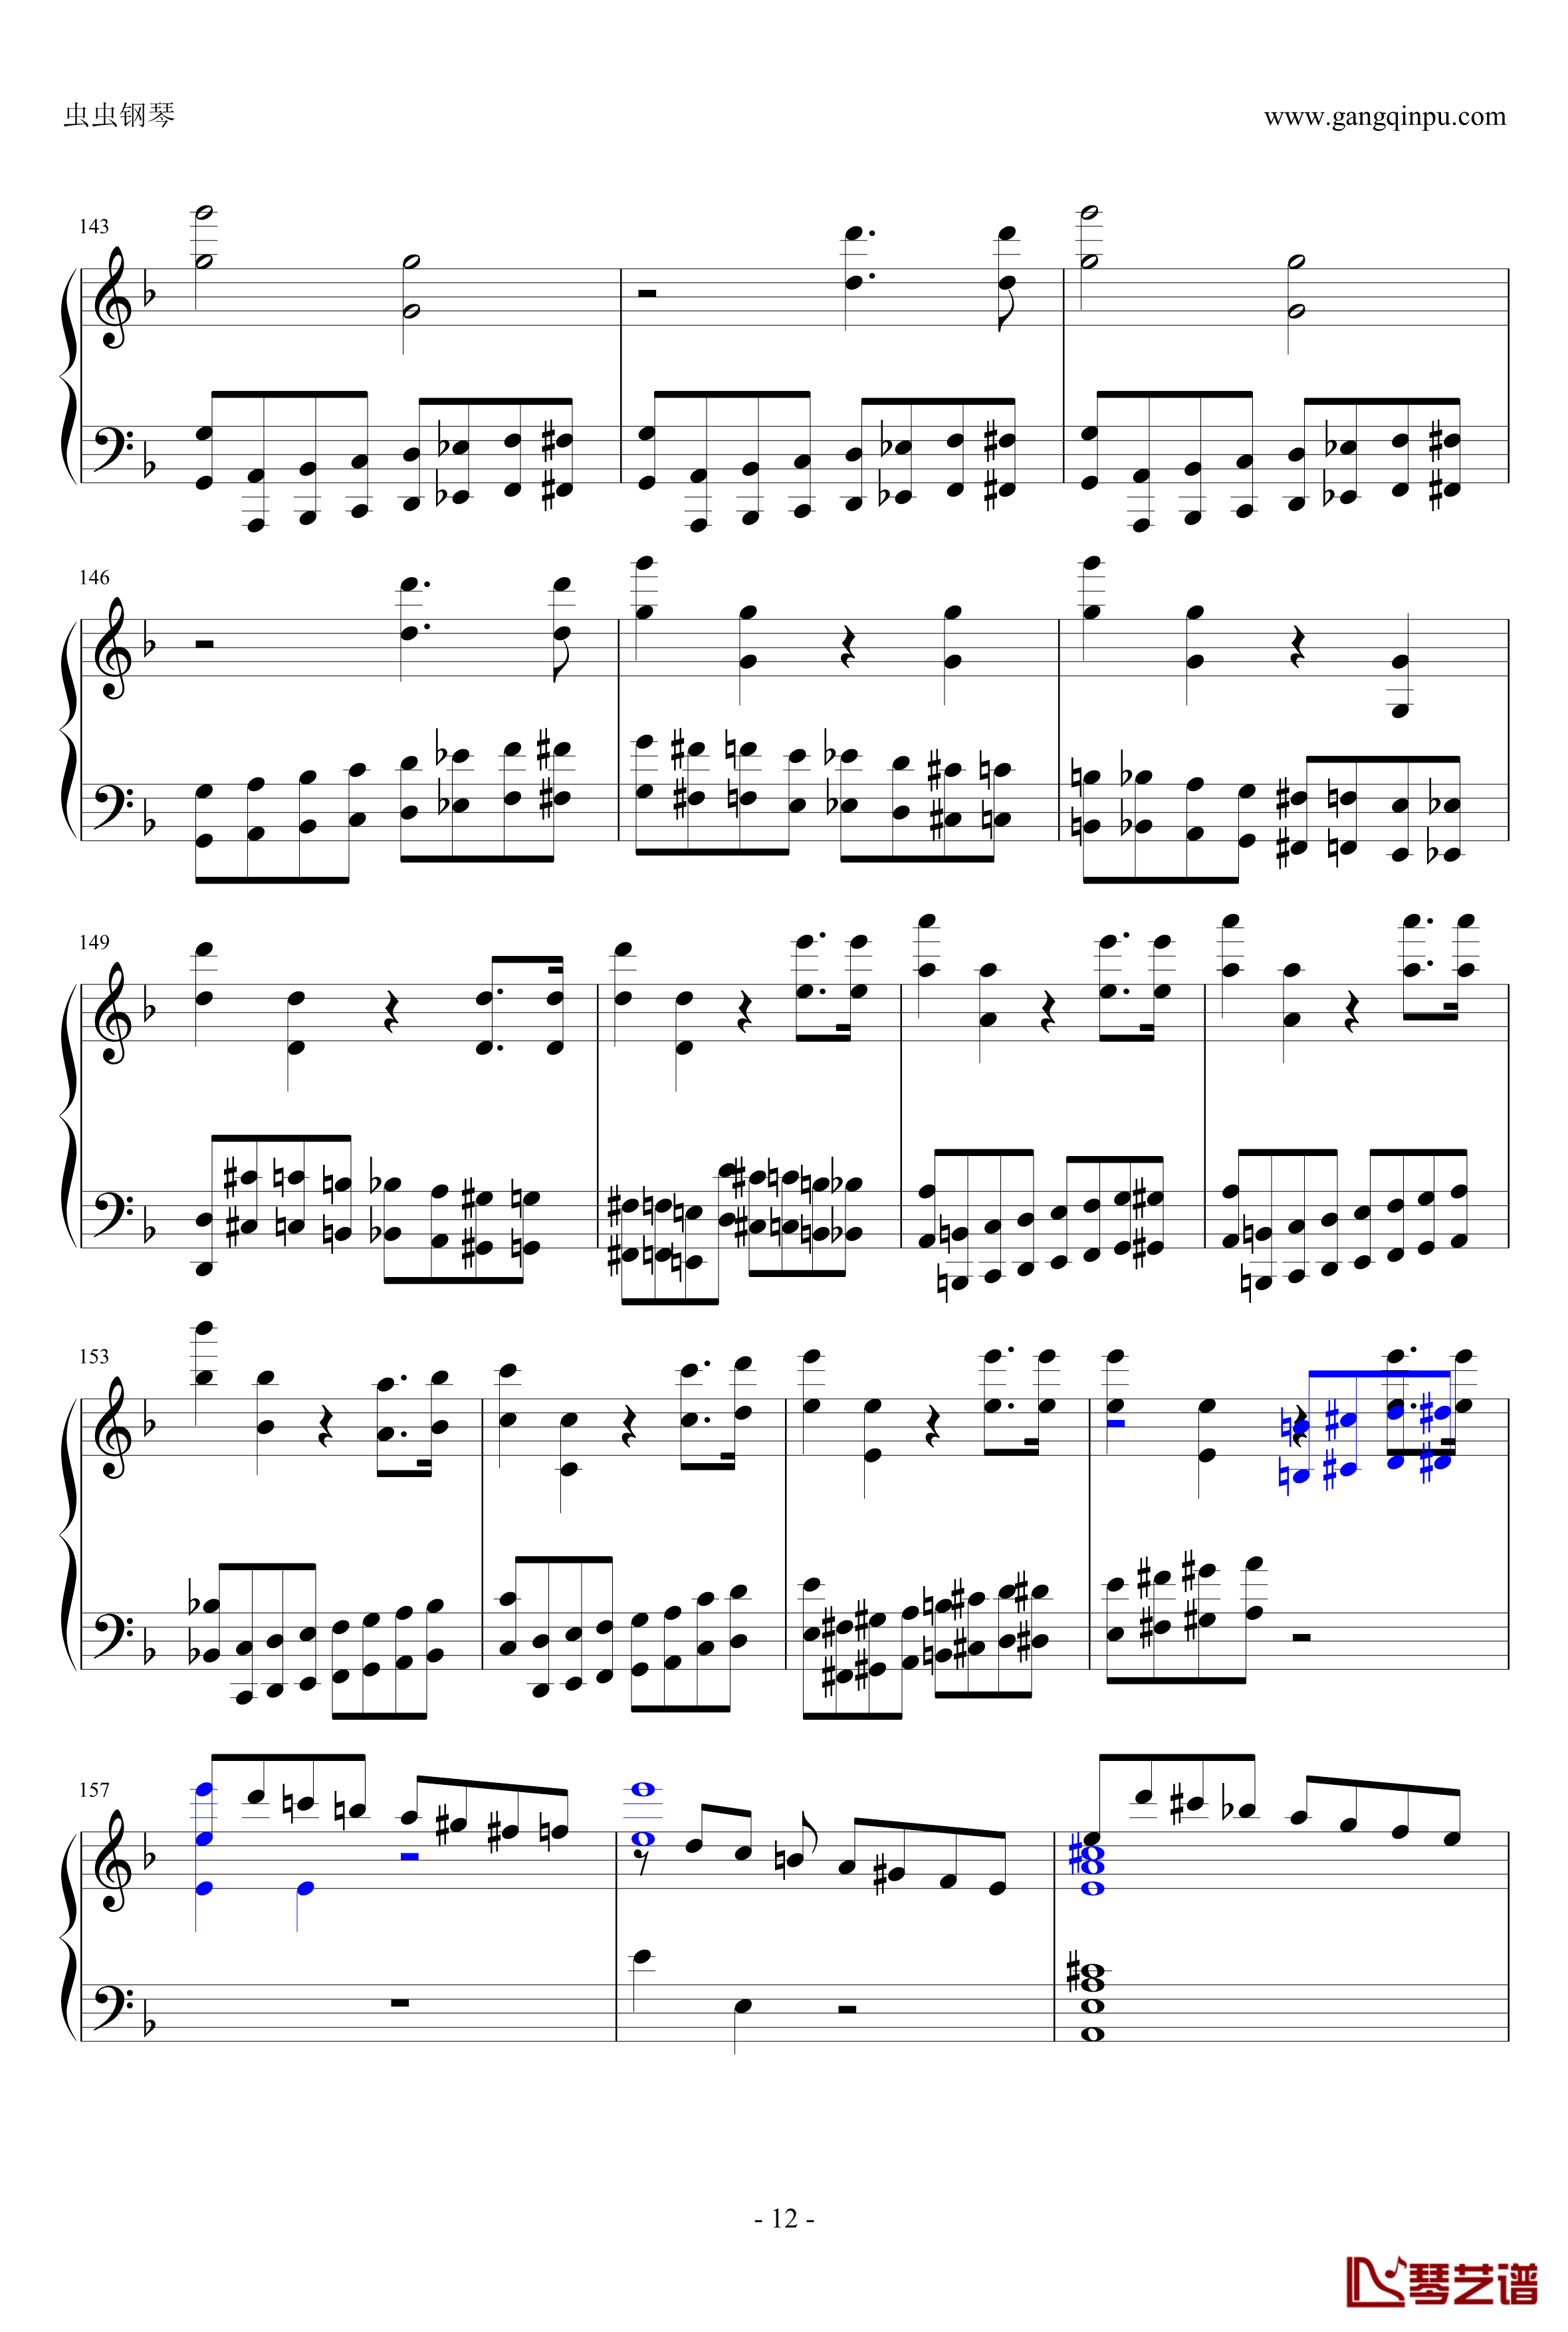 布鲁克纳第五交响曲第四乐章钢琴谱-钢琴独奏版12